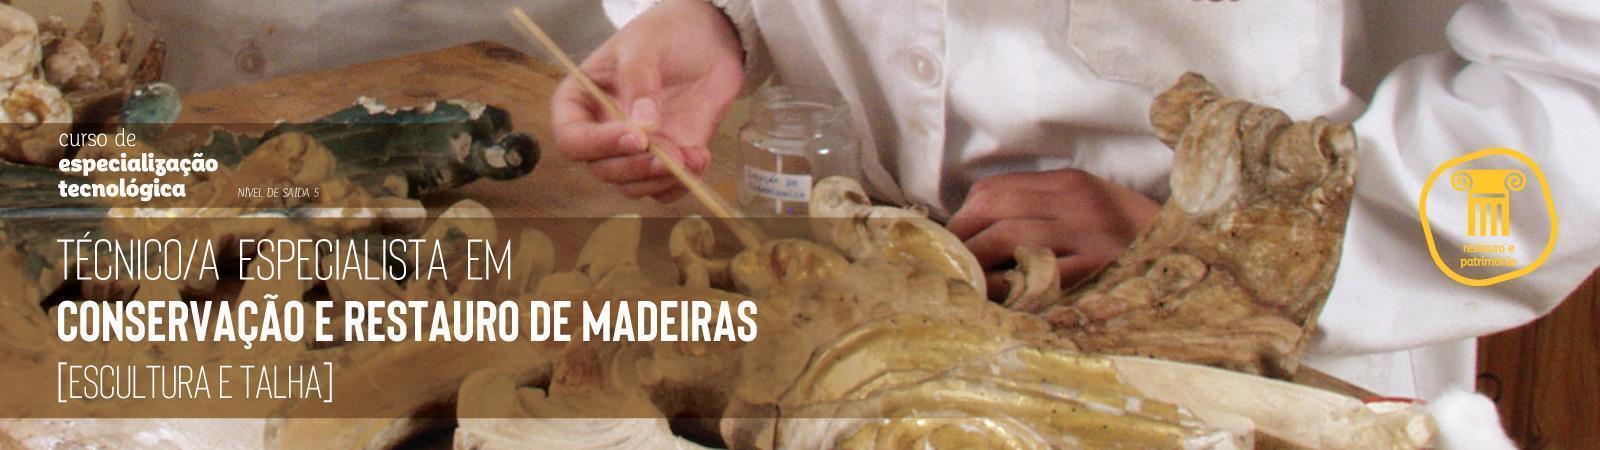 Técnico/a Especialista em Conservação e Restauro de Madeira (Escultura e Talha)